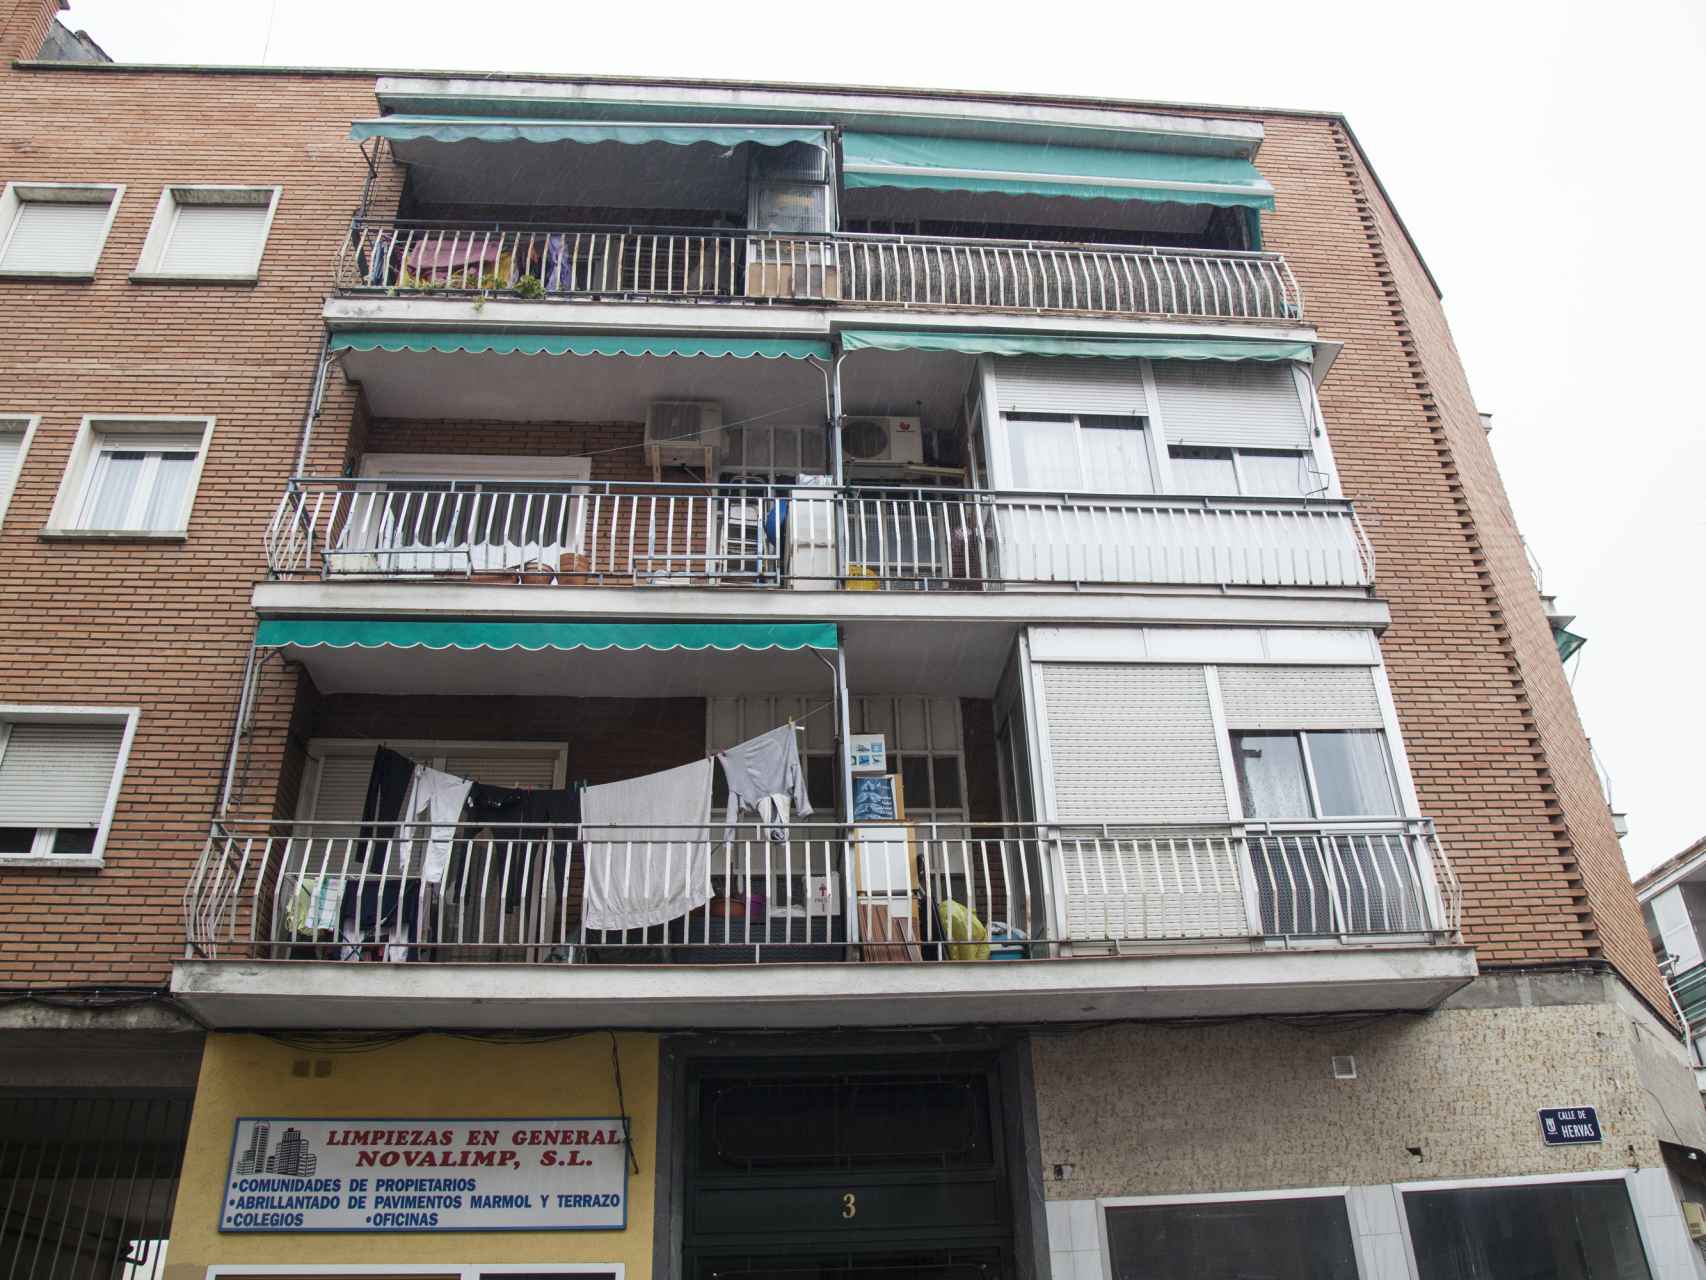 El edificio de la calle Hervás donde Juliana ha okupado uno de los pisos.